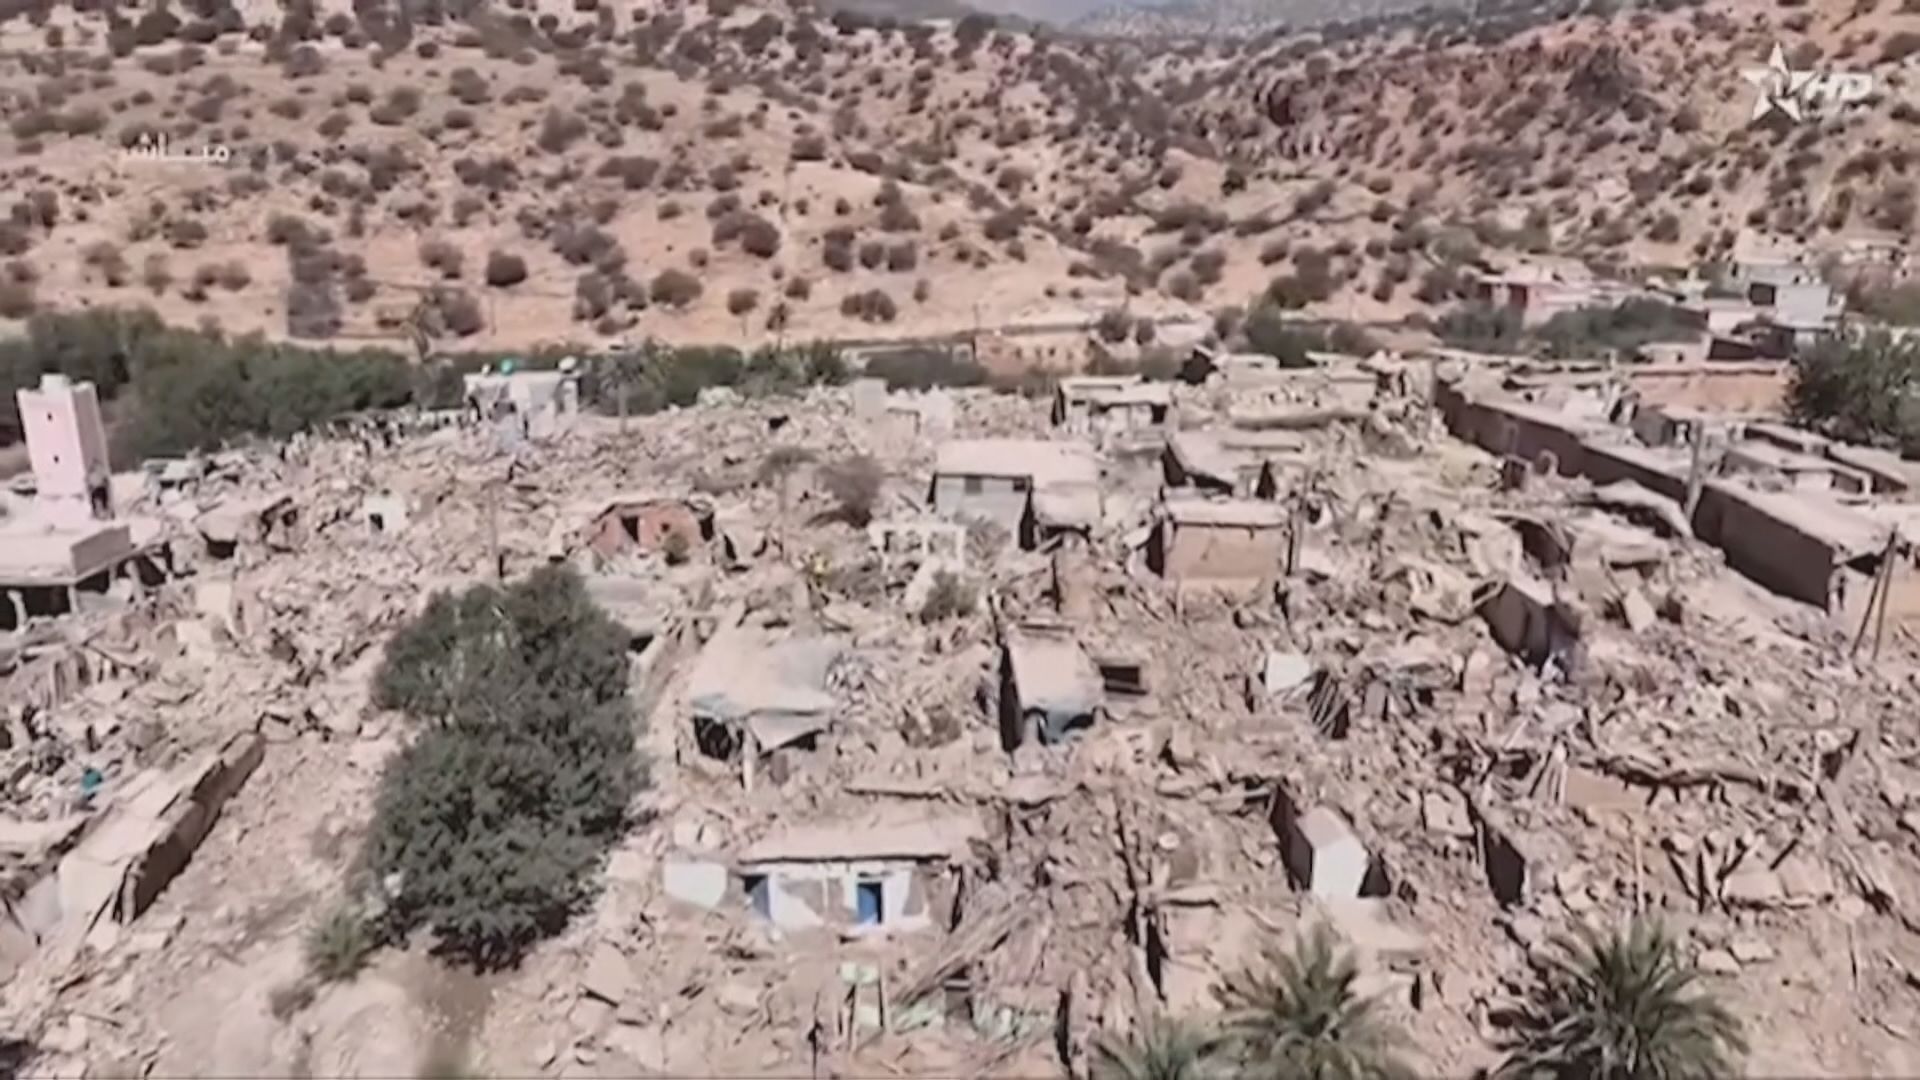 モロッコ地震 死者1300人超に、マラケシュと周辺の被災者30万人超に | TBS NEWS DIG - TBS NEWS DIG Powered by JNN